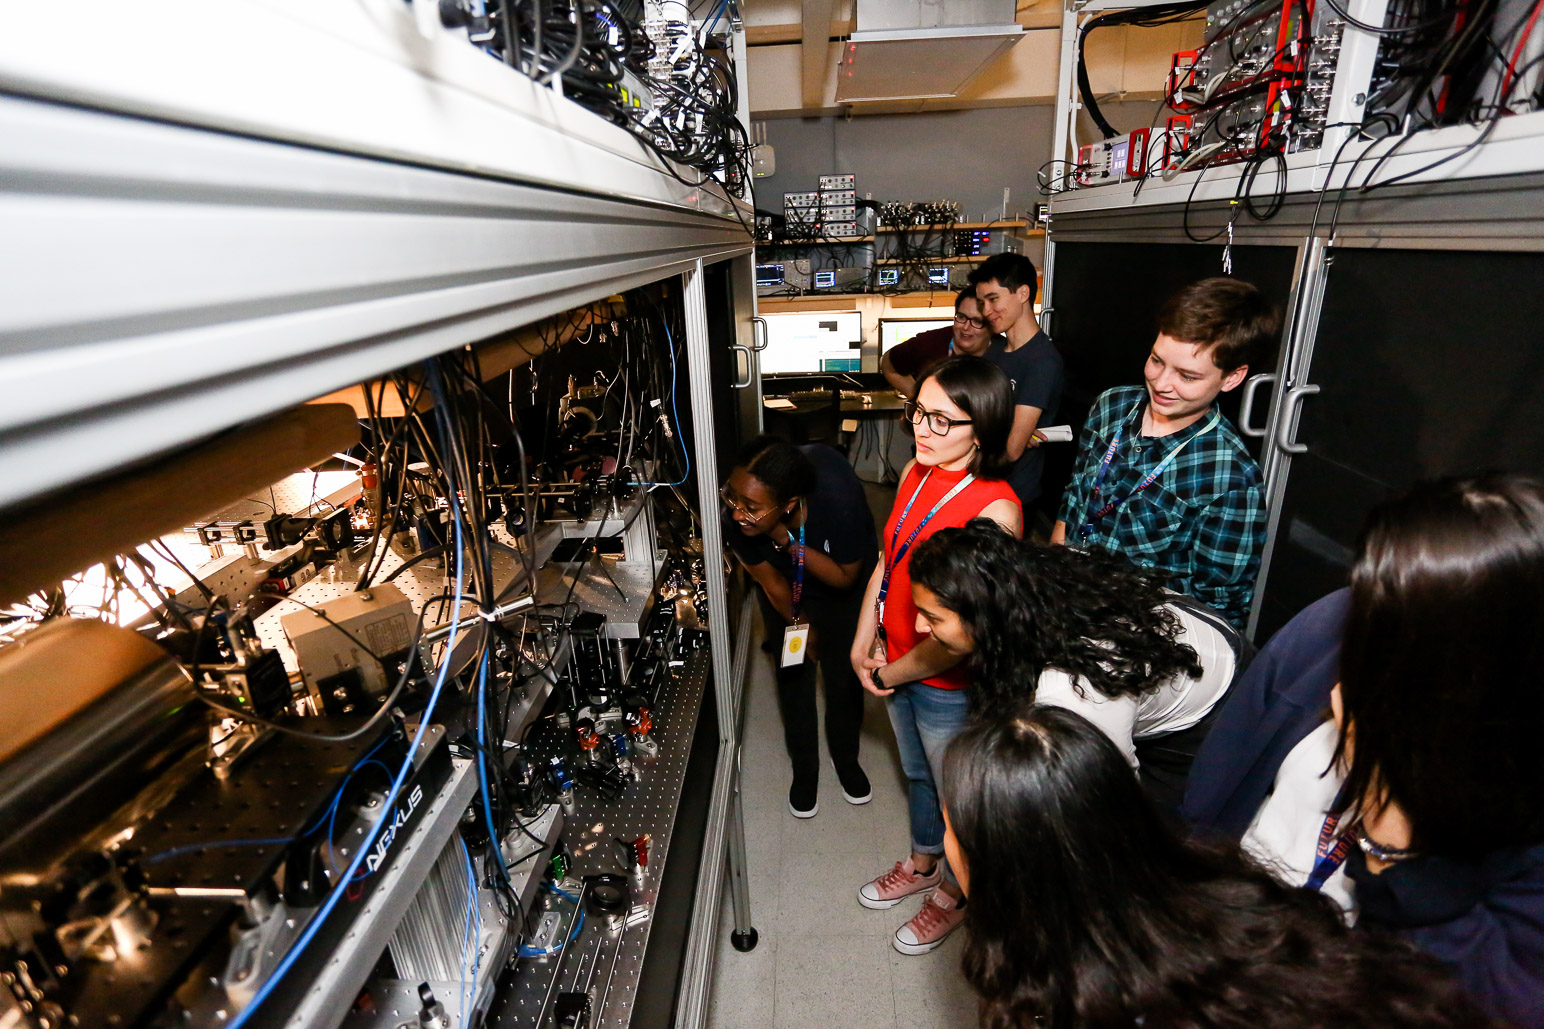 FUTURE 2019 Participants in a Caltech Lab